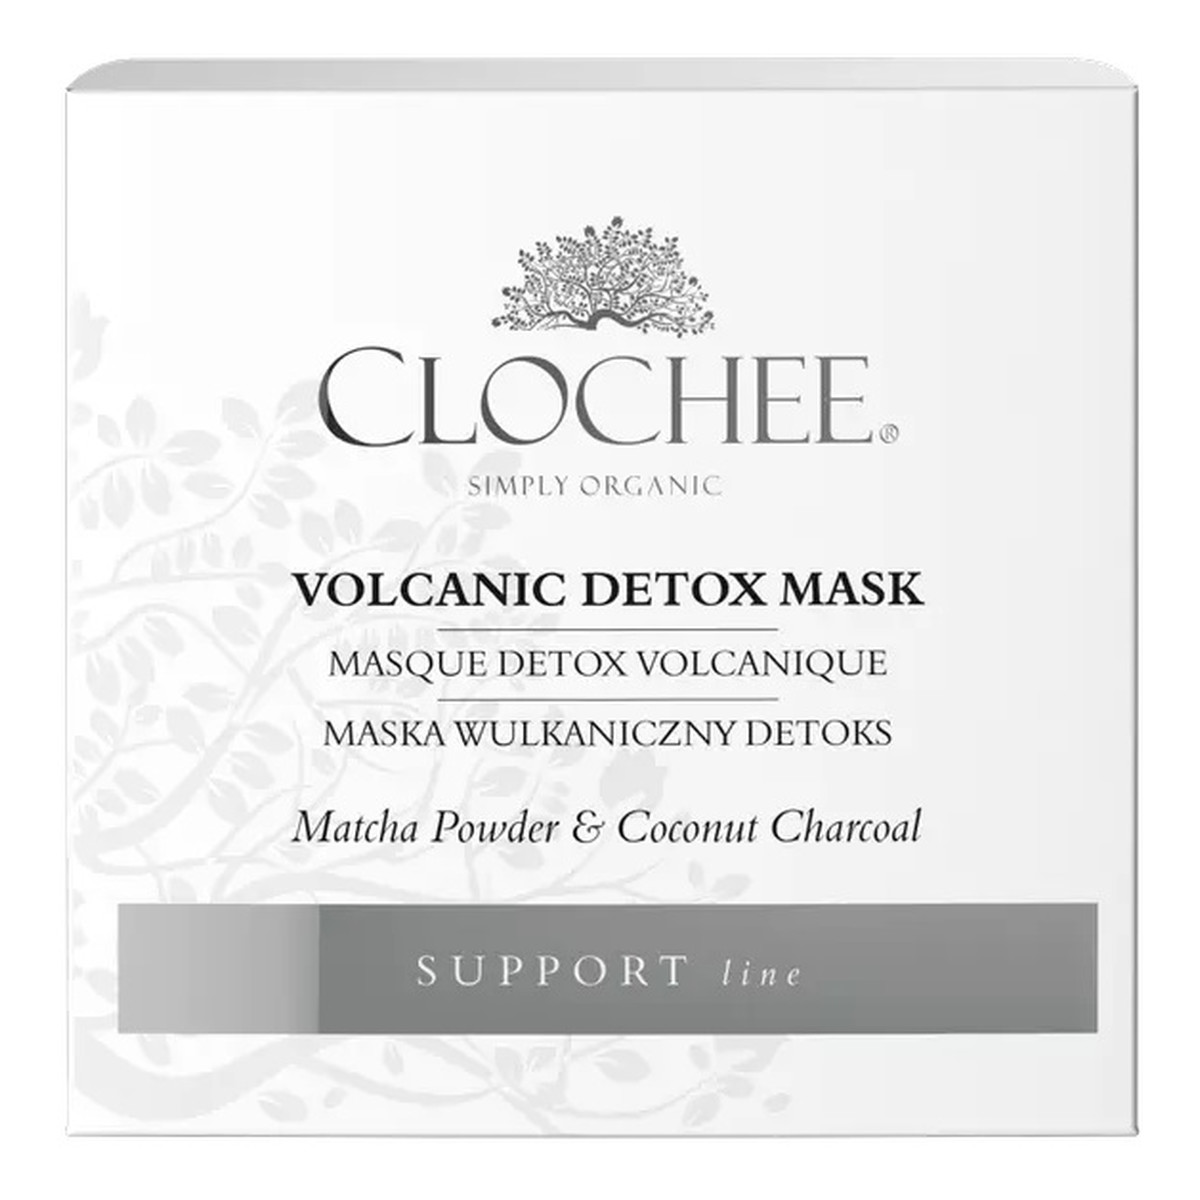 Clochee Volcanic Detox Mask maska wulkaniczny detoks 50ml